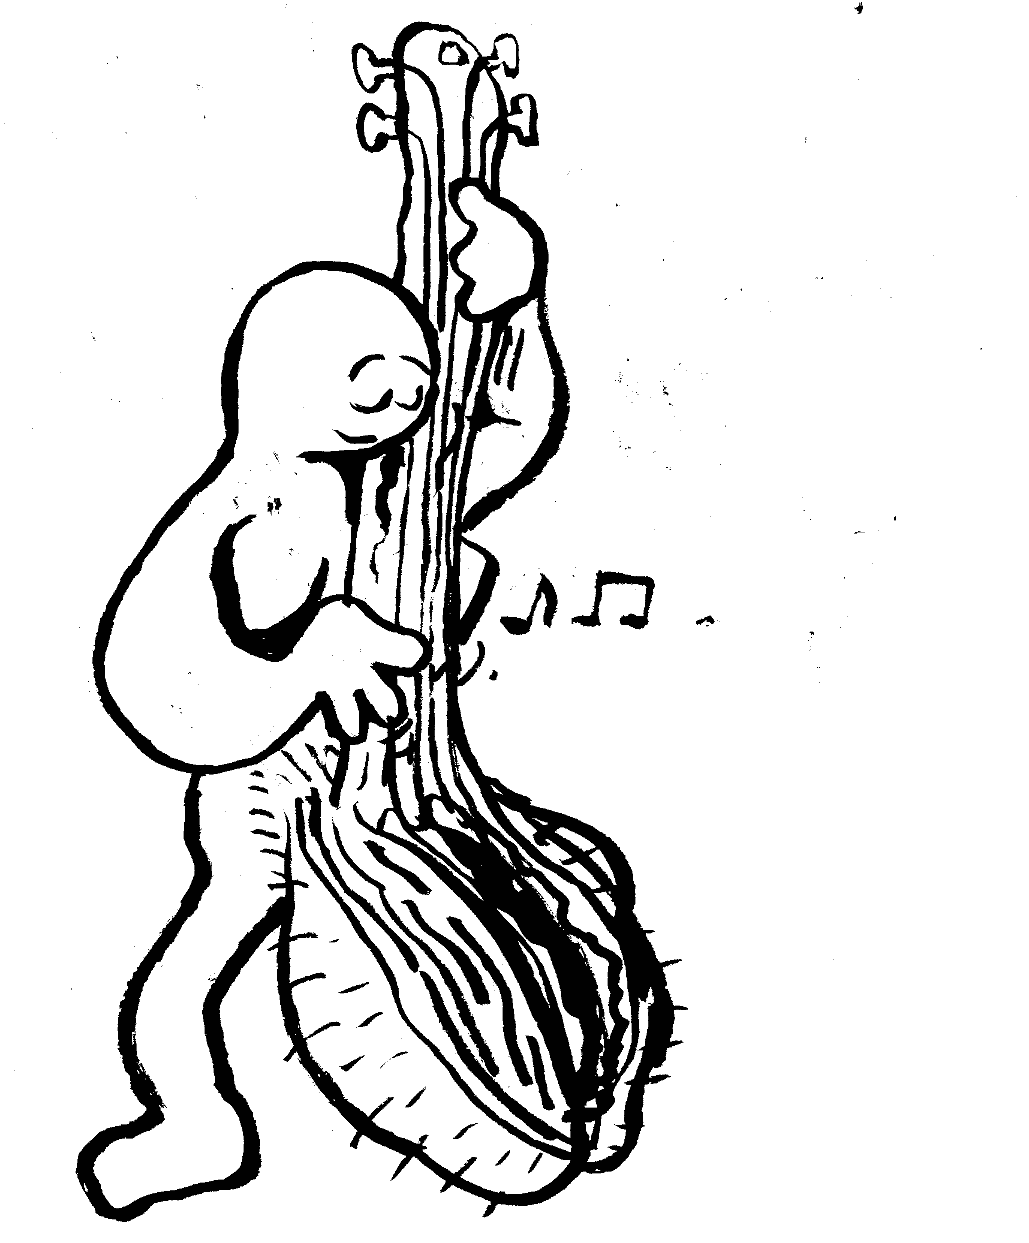 Vagina musical instrument penis